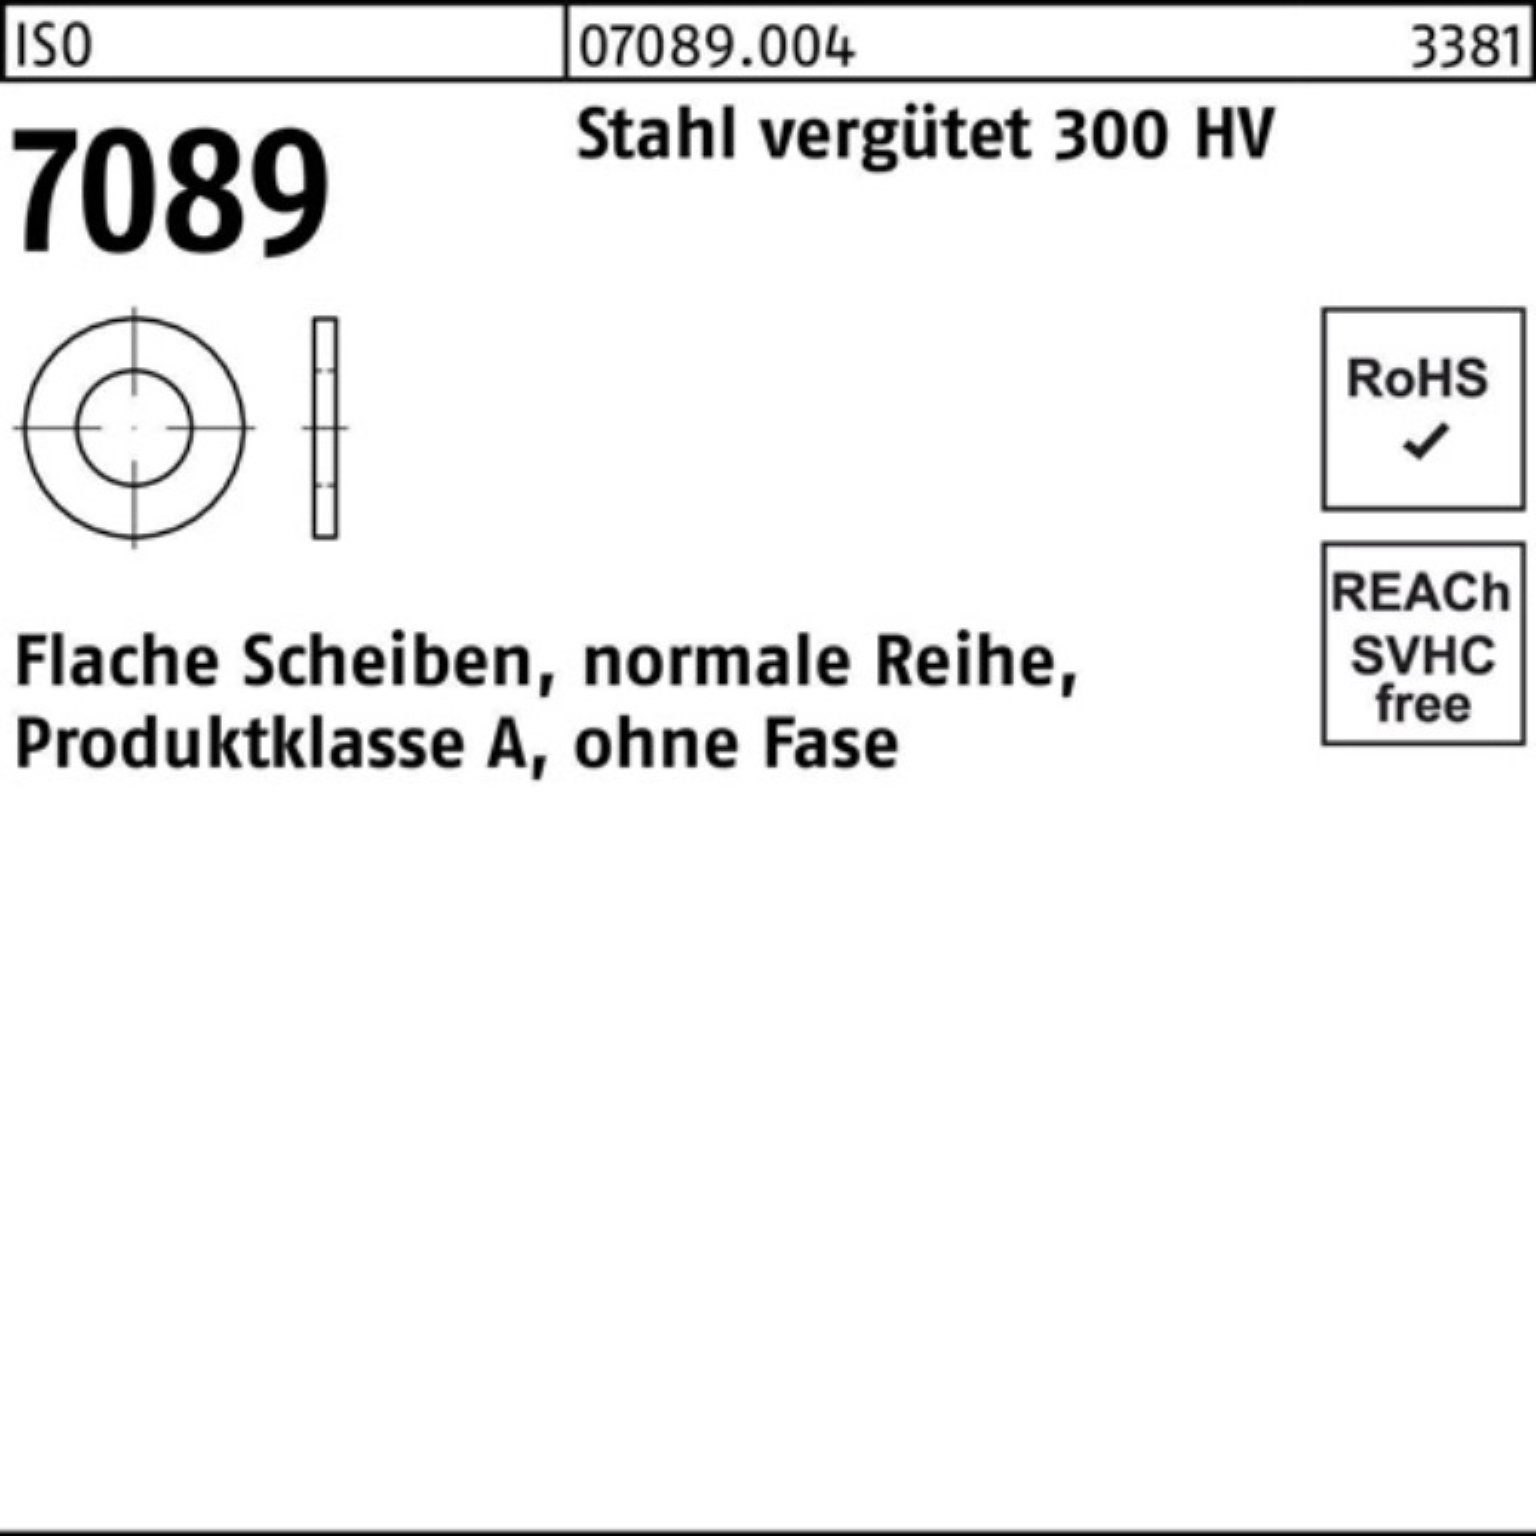 Bufab Unterlegscheibe 100er Unterlegscheibe Pack 1 300 o.Fase 7089 20 Stahl ISO vergütet HV